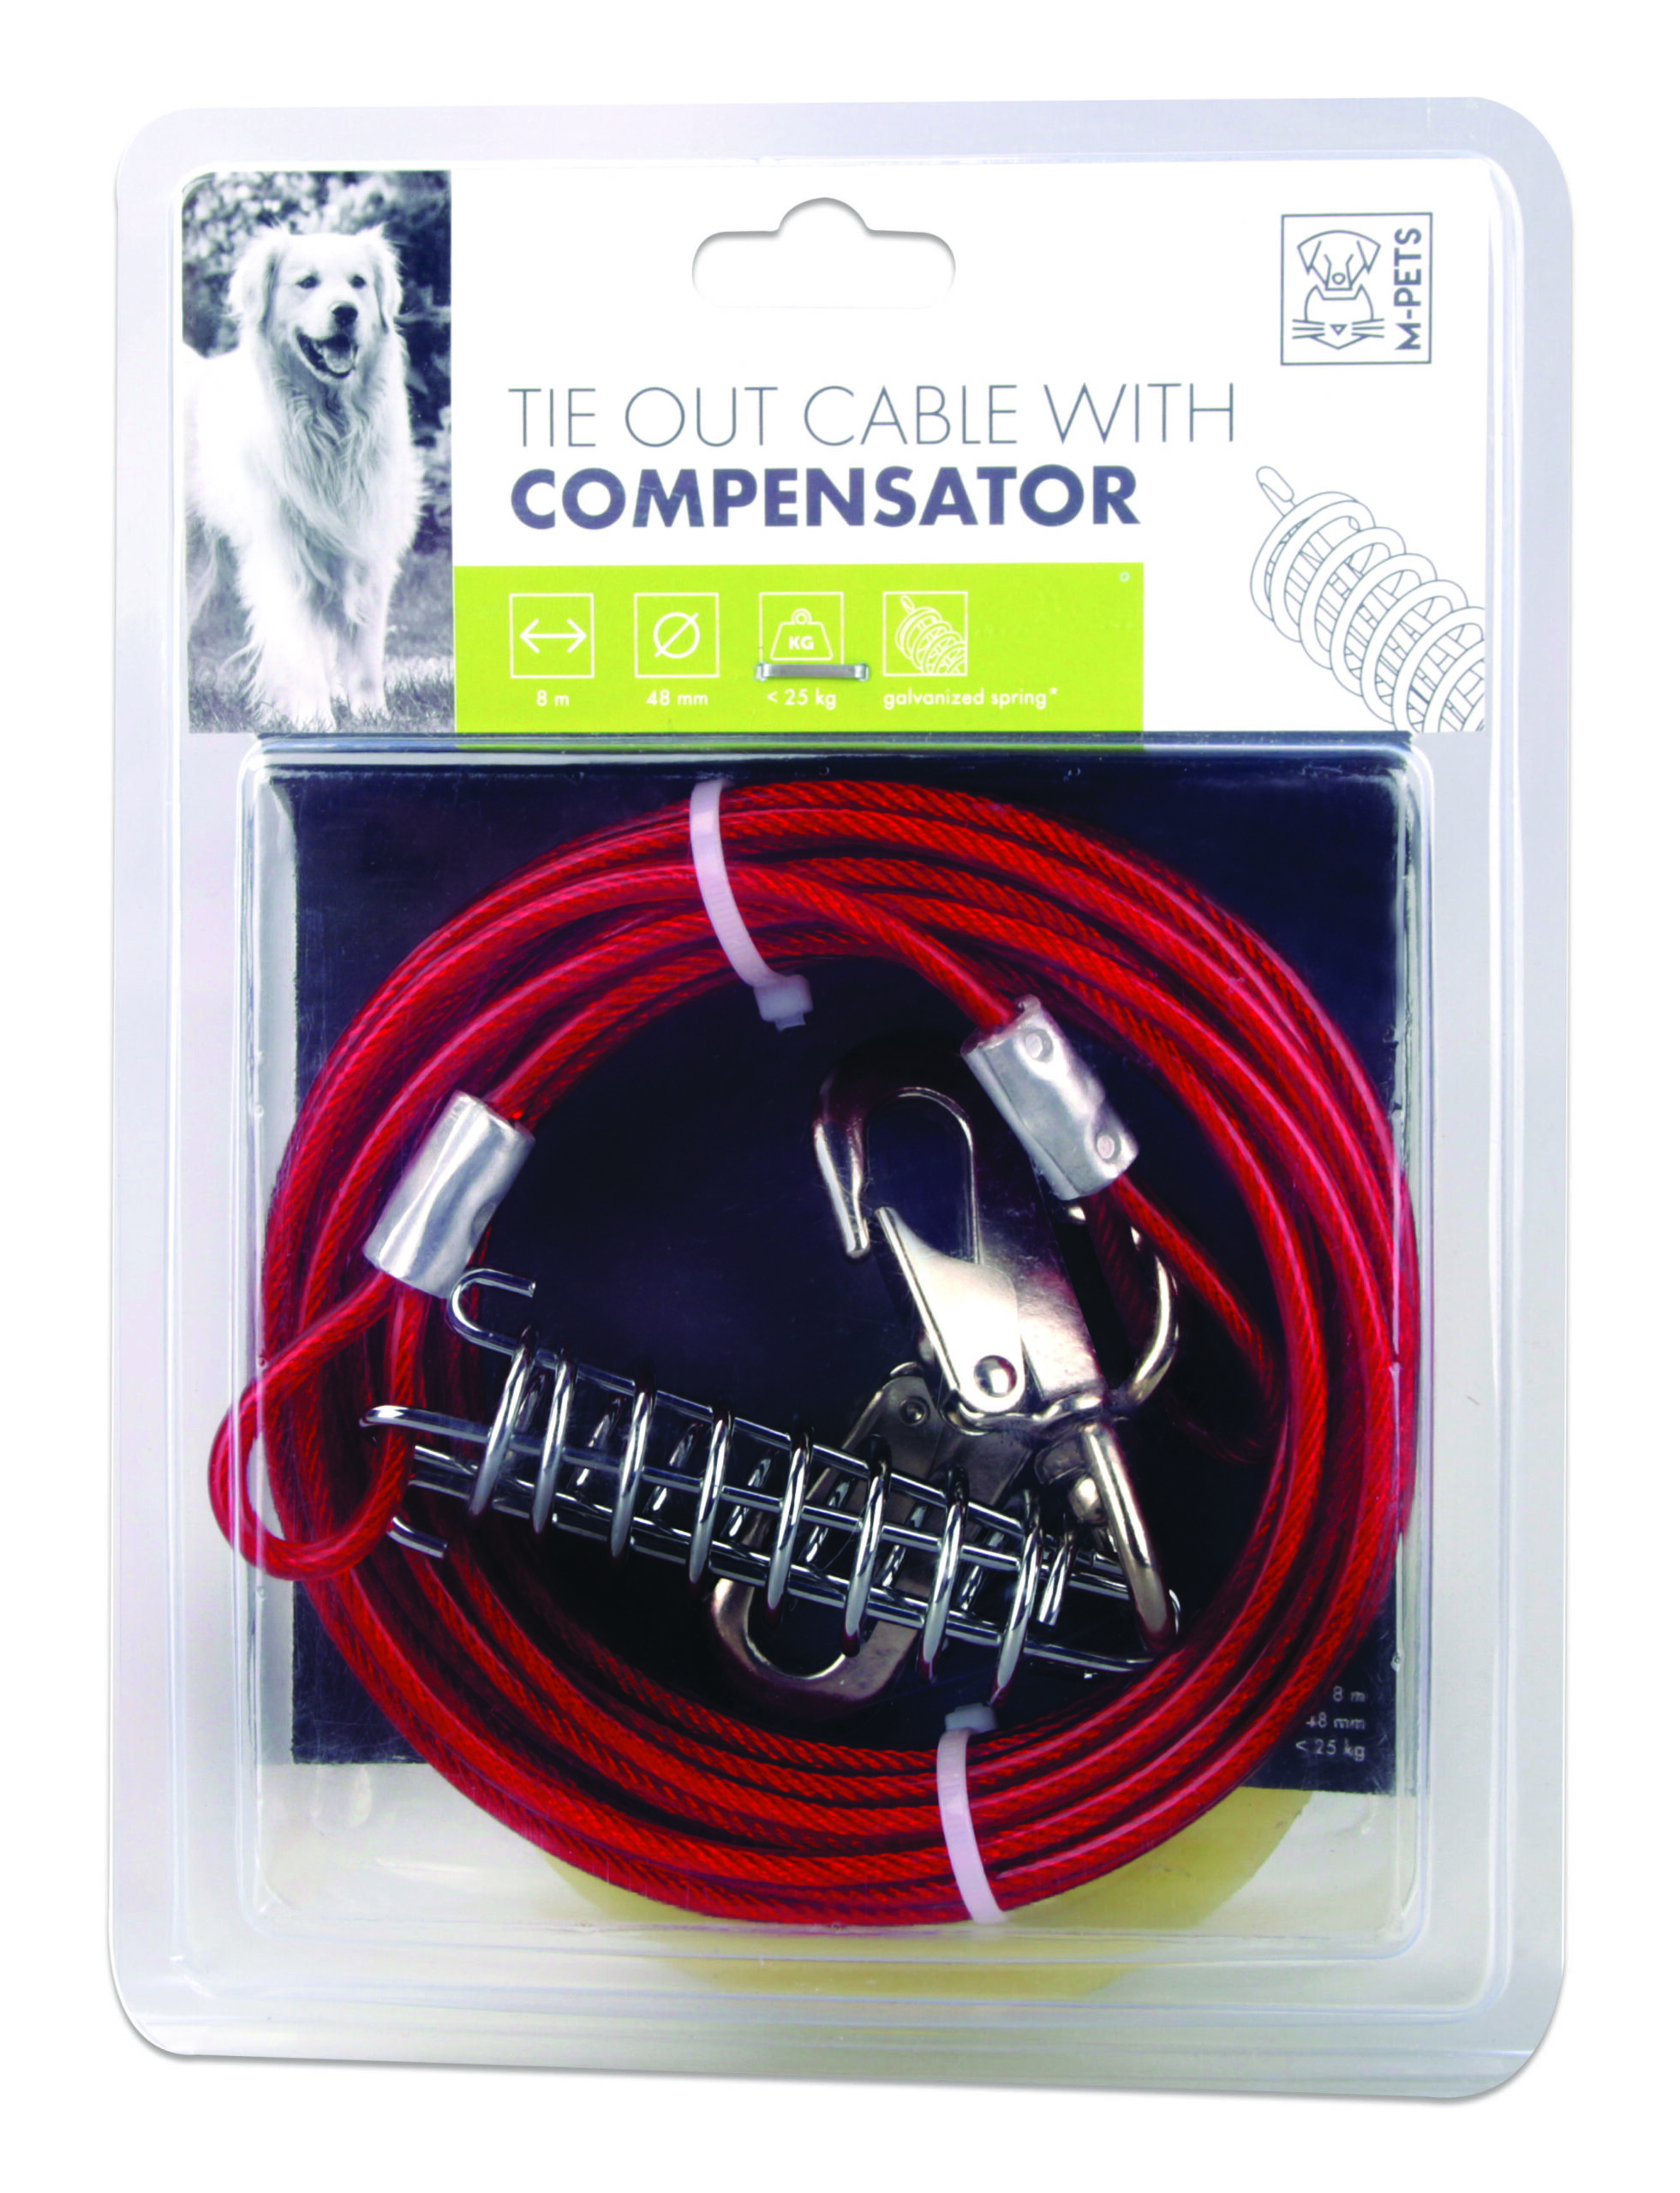 M-PETS_10801305 Tie Out Cable COMPENSATOR 8 new copie